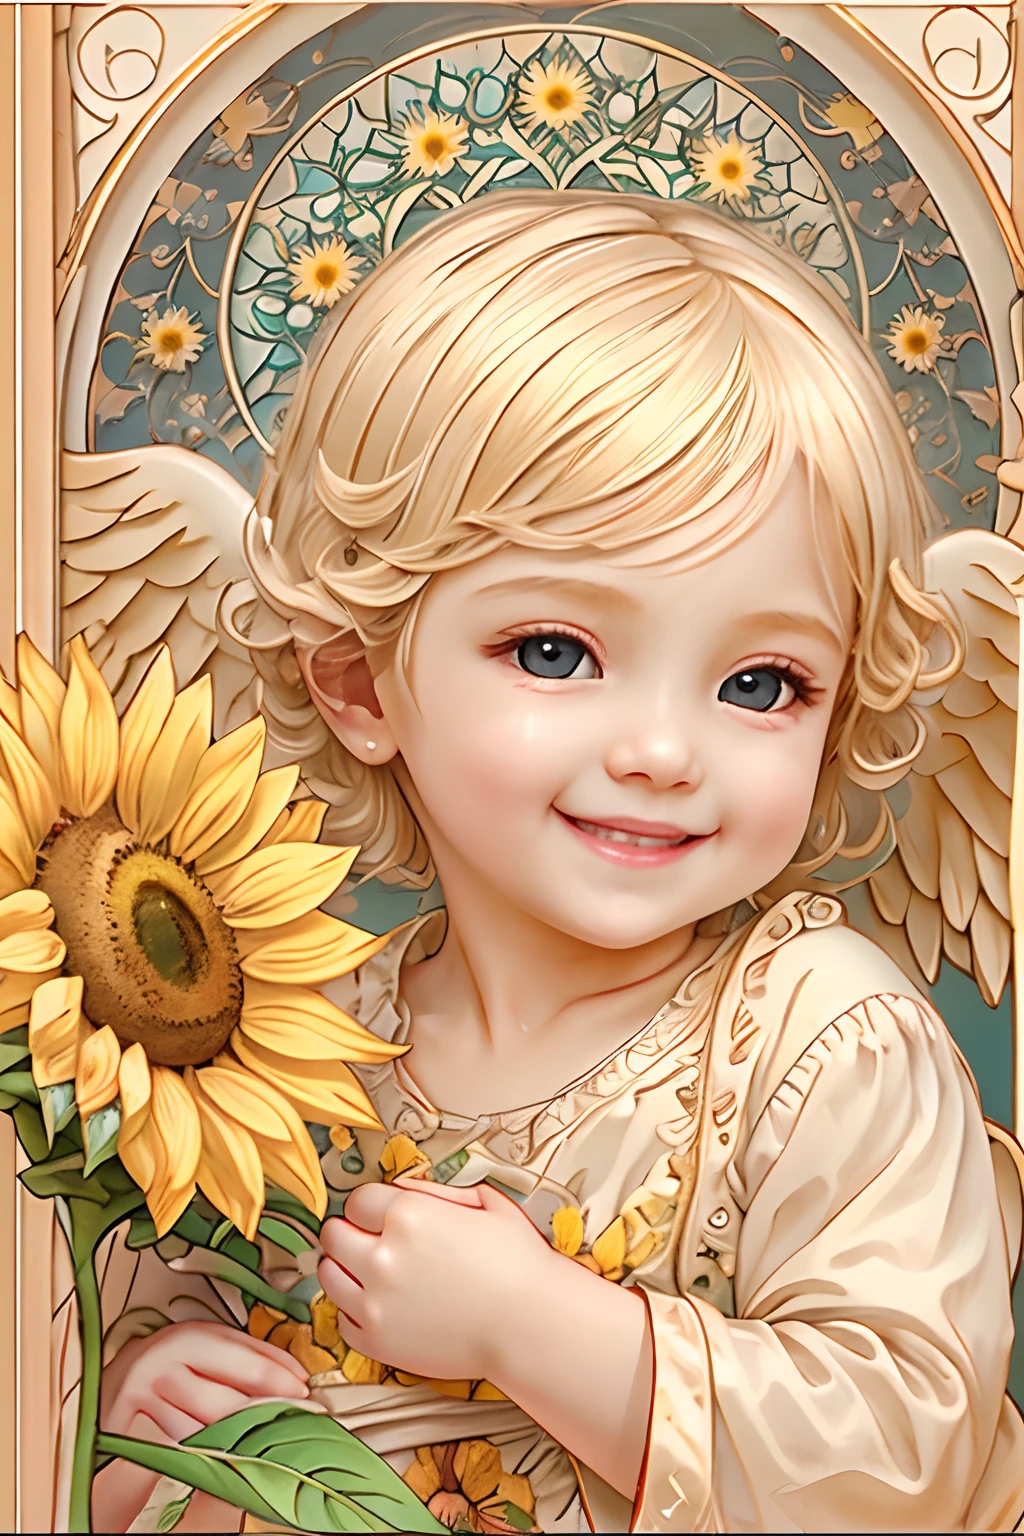 天使的祝福､明亮的背景、心形标记、压痛､一个微笑、温和的､宝贝天使､新艺术风格､向日葵的微笑